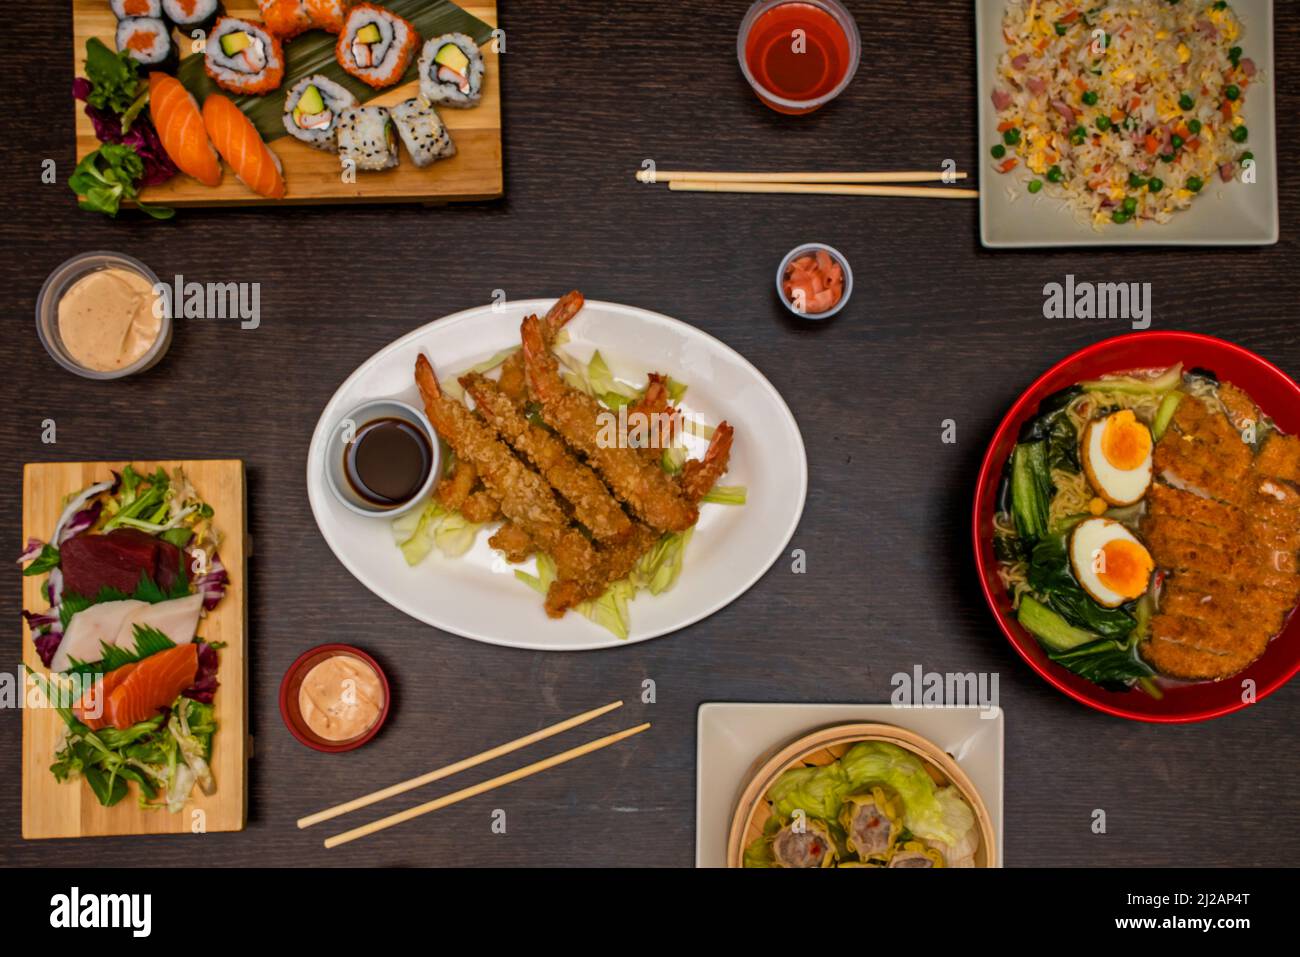 conjunto de platos de comida asiática, con ramen, tres delicias de arroz,  tempura de camarones, maki de atún, uramaki aguacate surimi, algas nori,  huevas de masago, amapola y se Fotografía de stock -